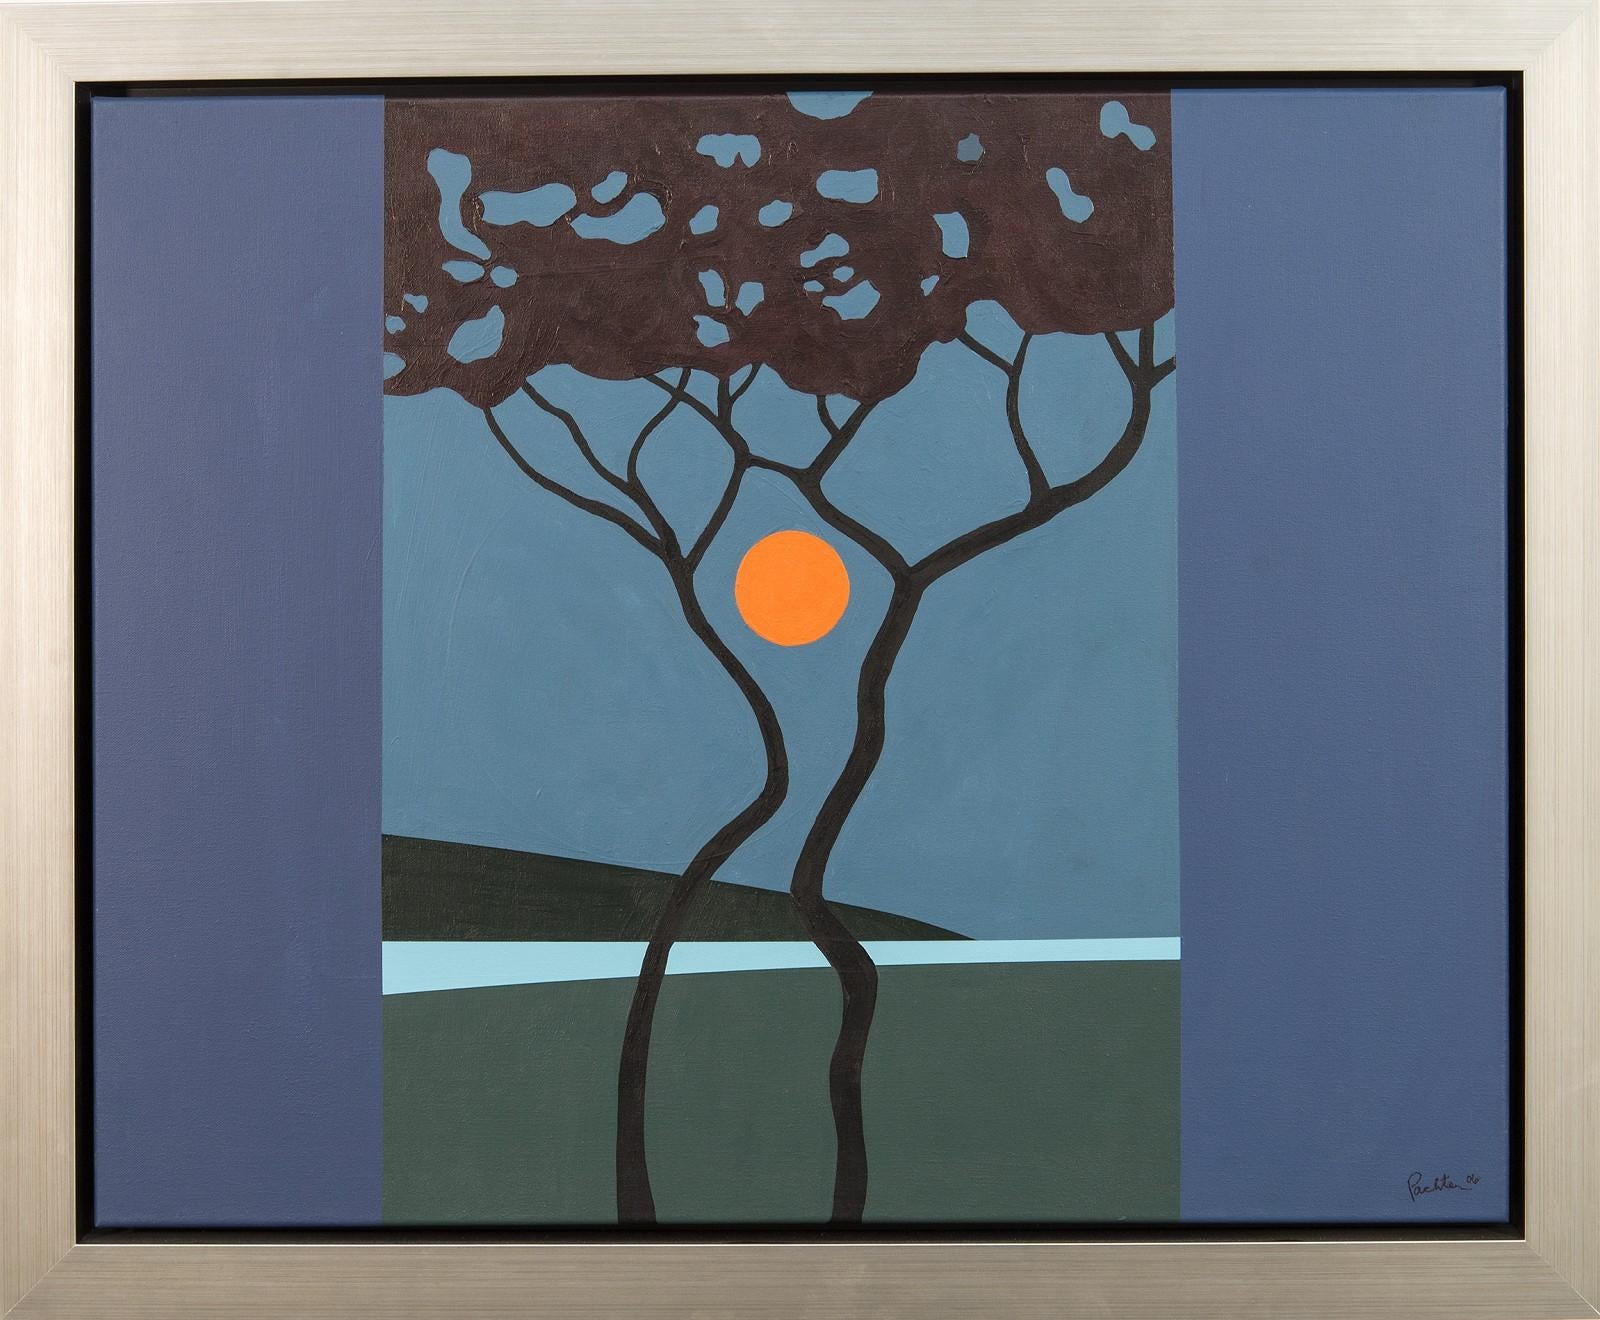 Sumach-Mond – blau, orange, Bäume, Mond, grafisch, Pop-Art, Landschaft, Acryl